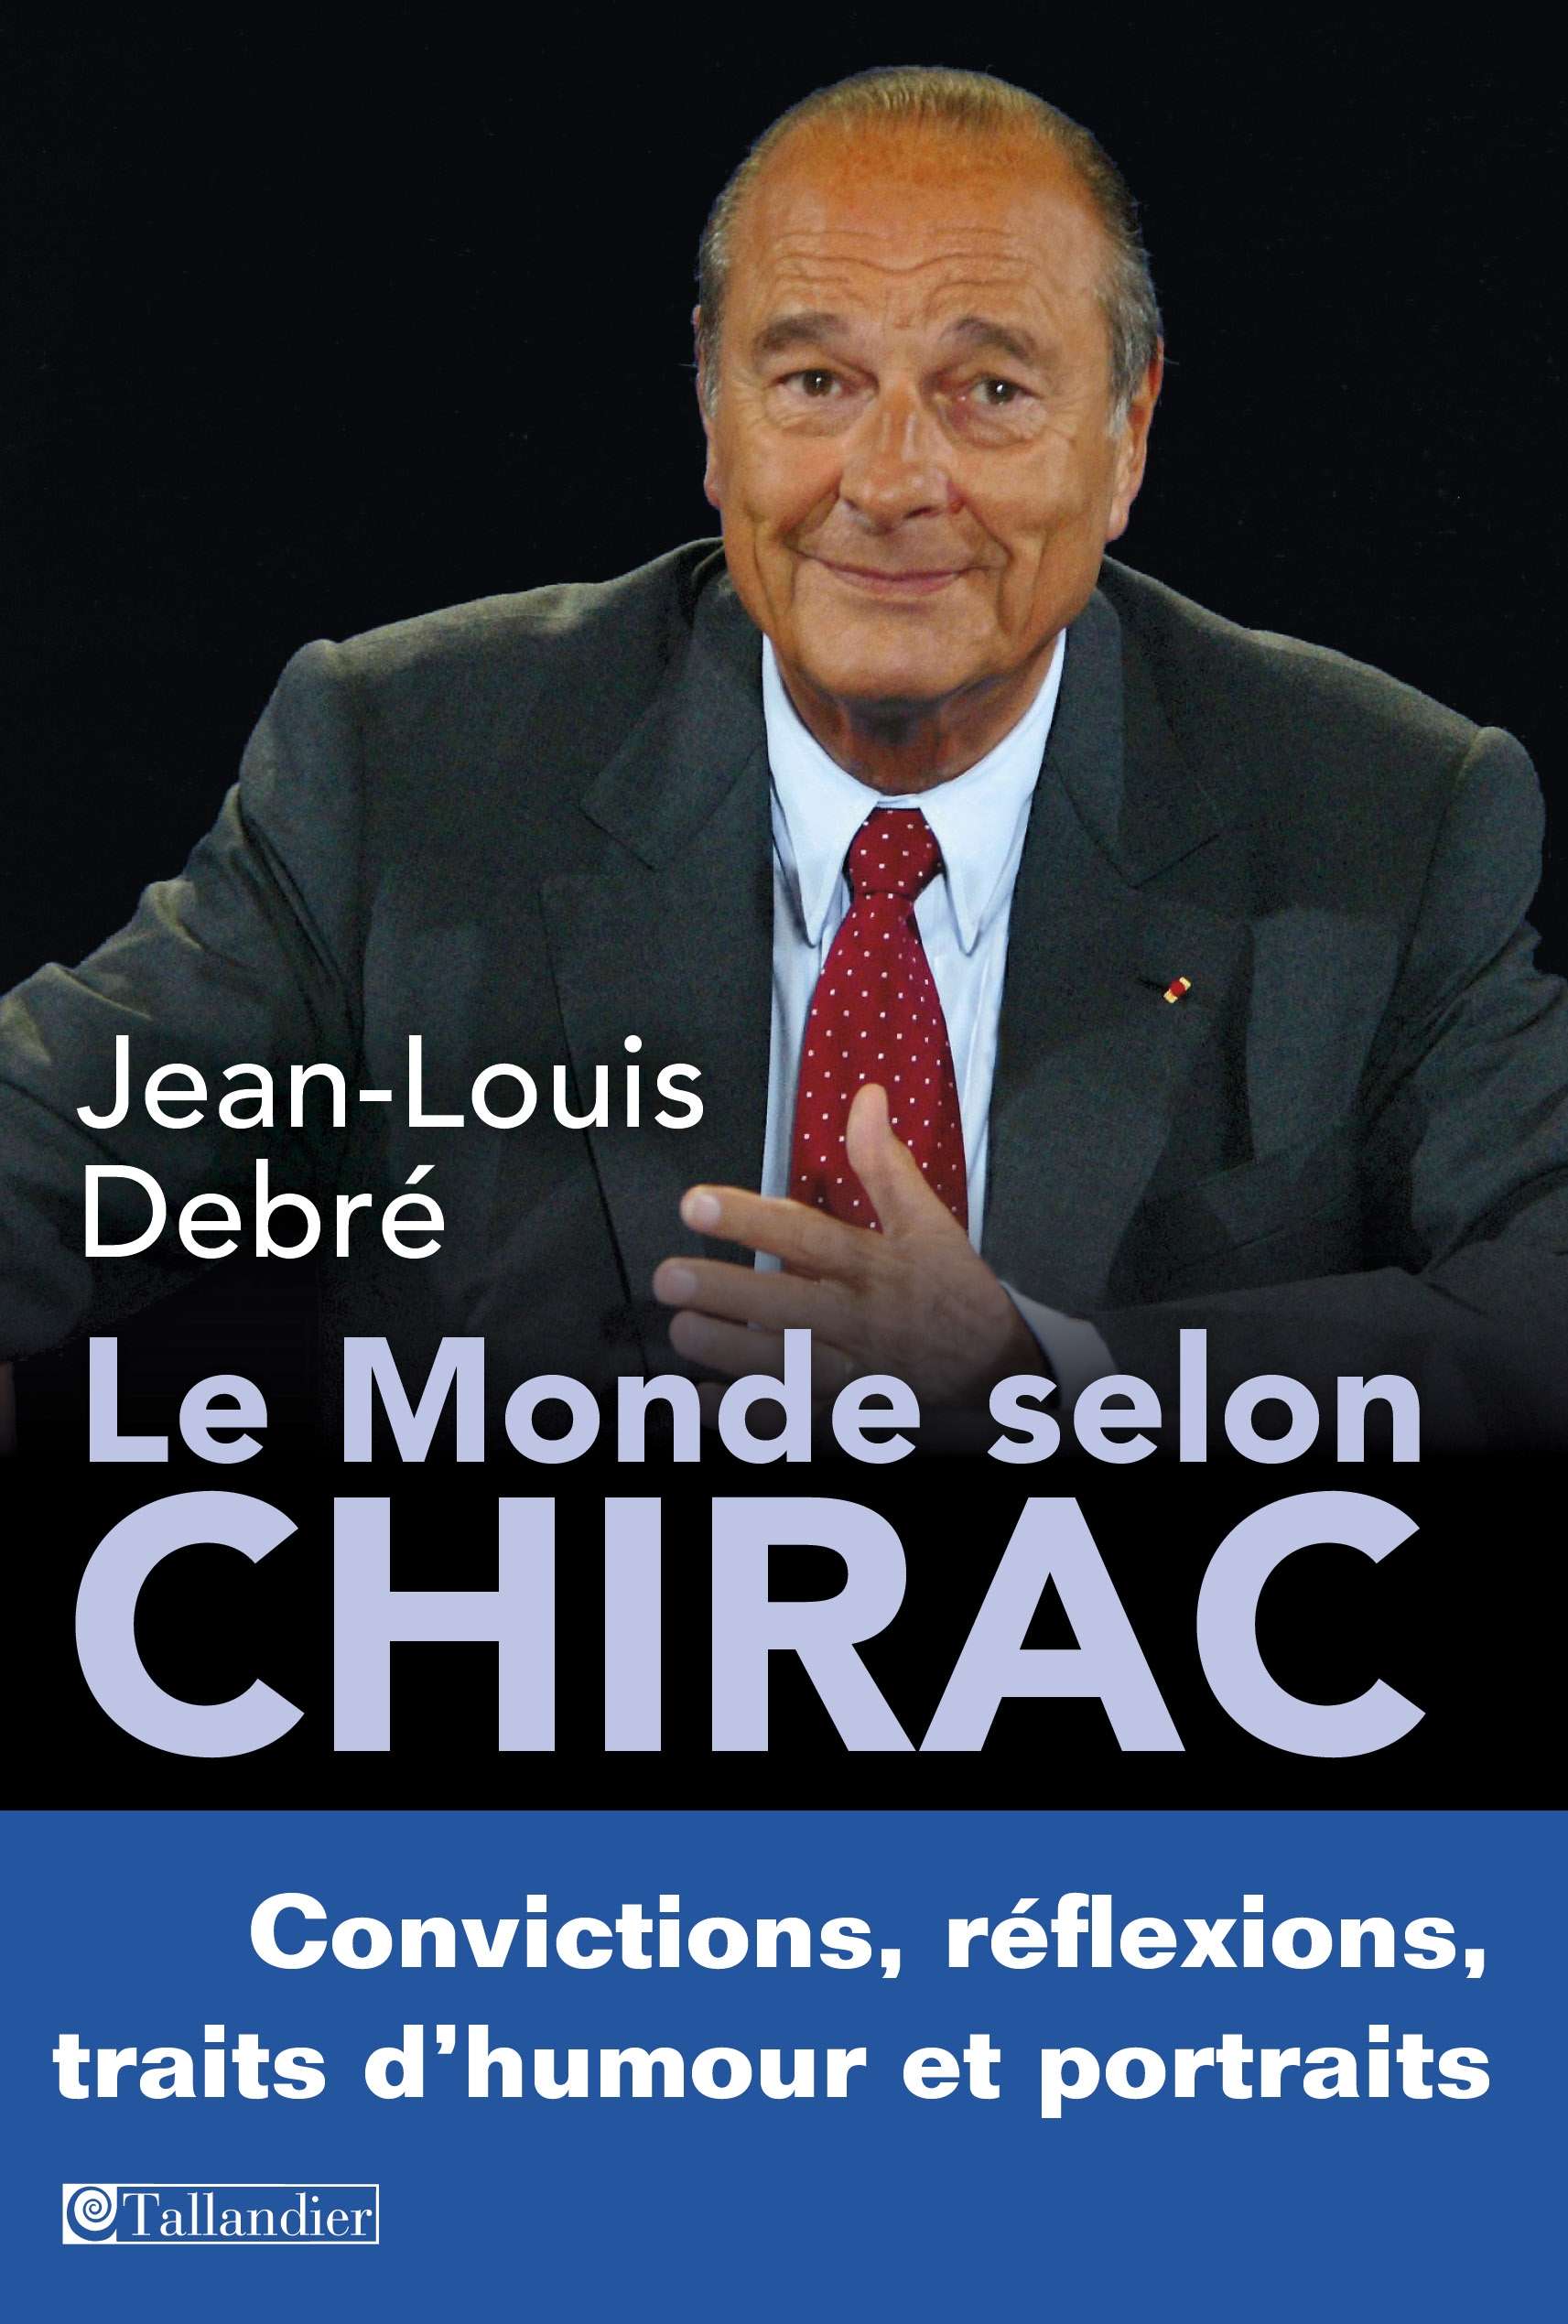 chirac-epub.jpg